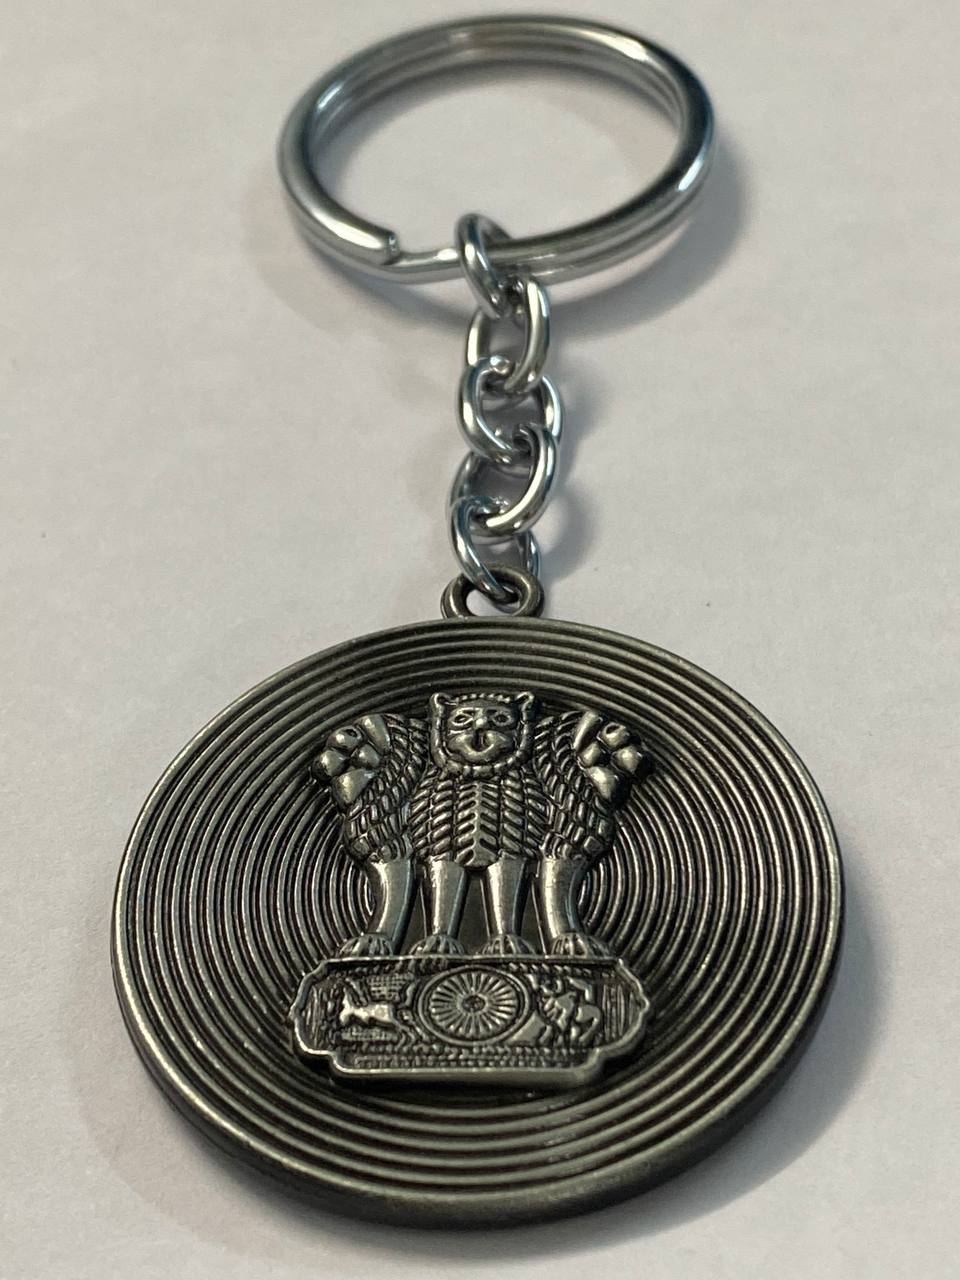 Ashok Stambh embossed keychain